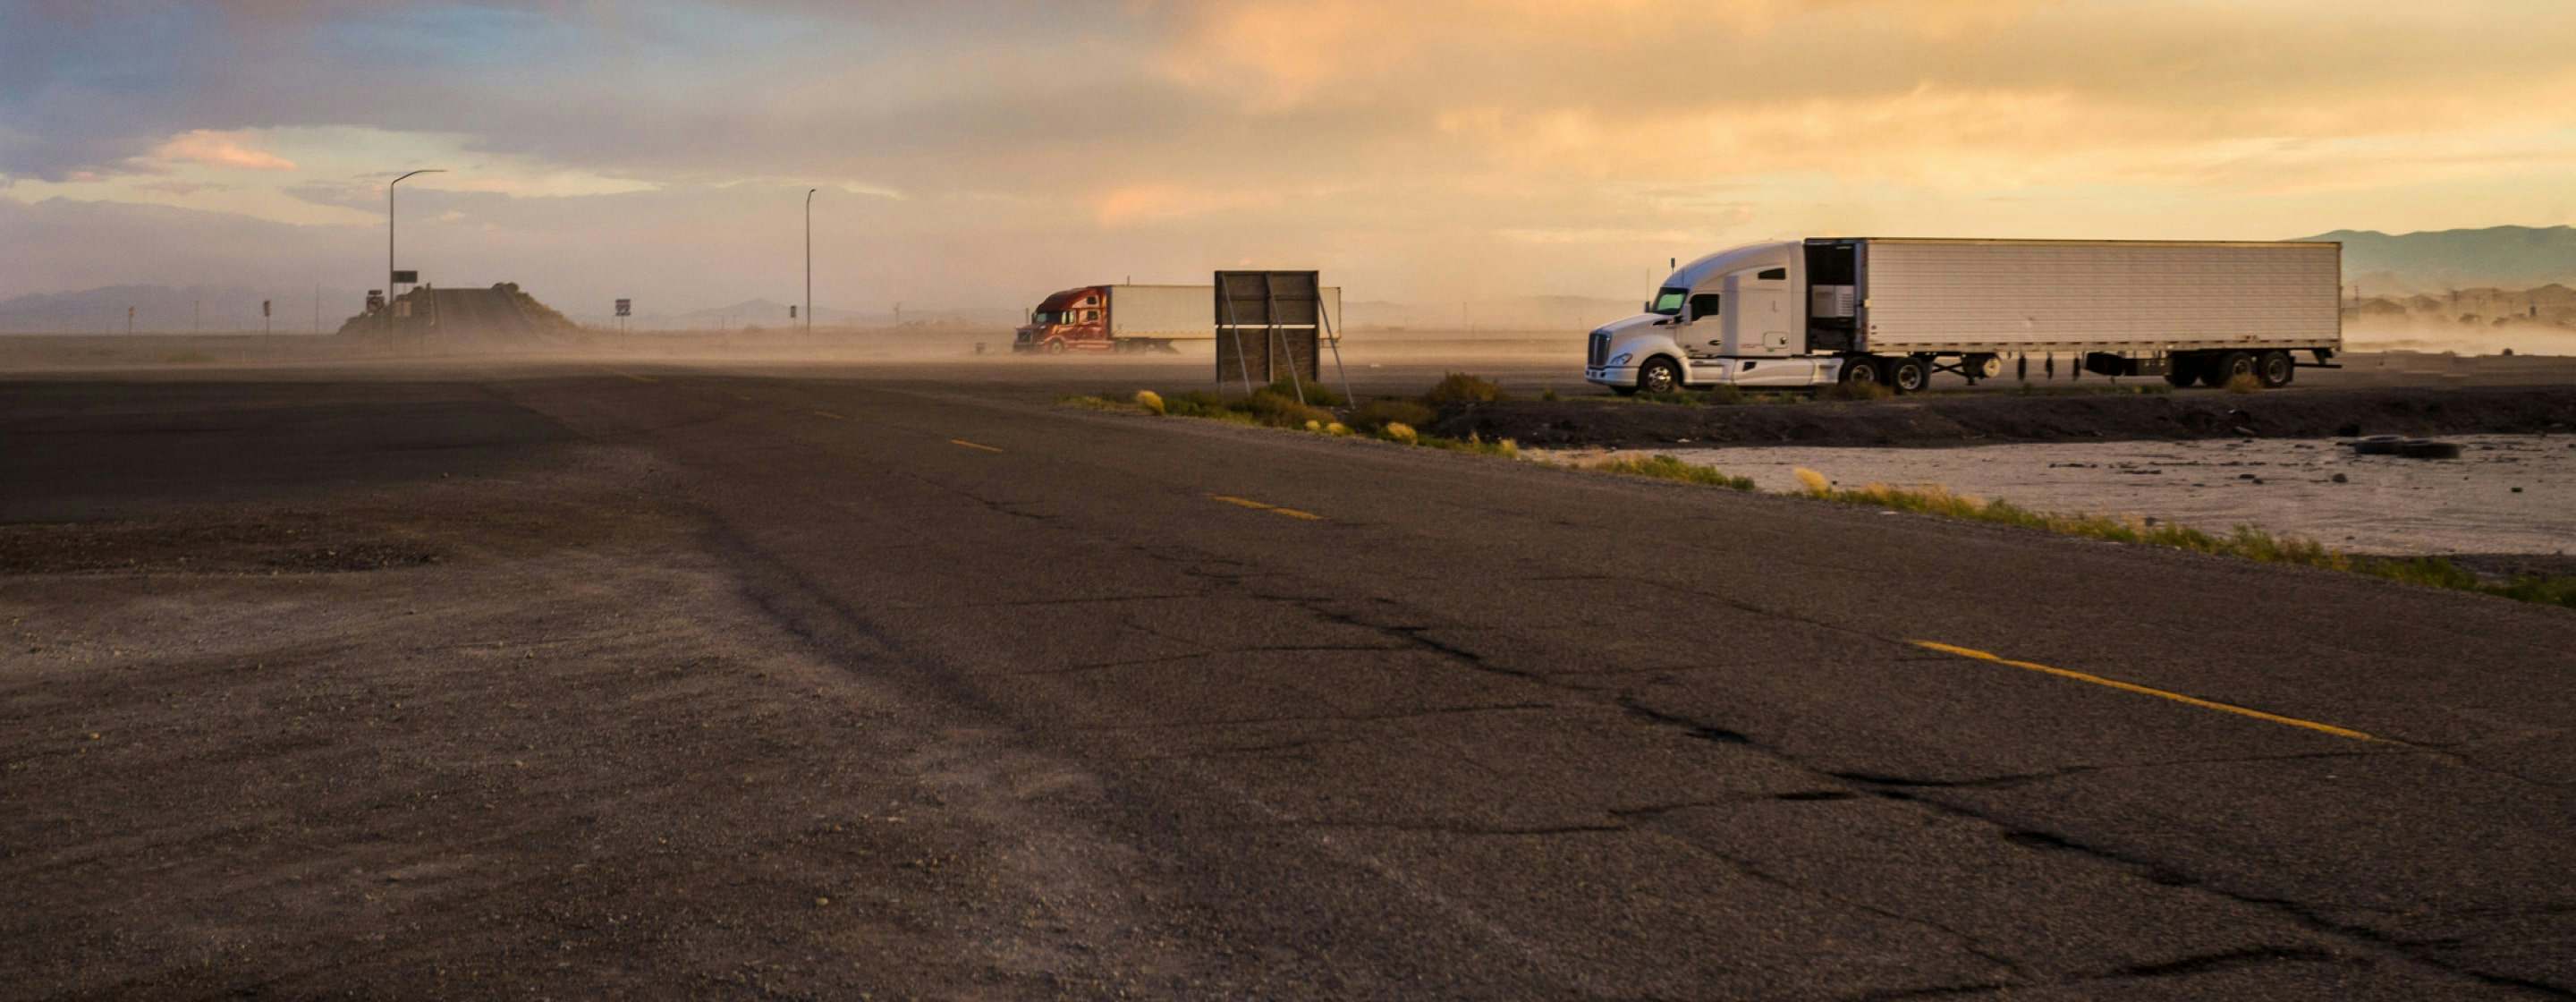 semi trucks in the desert